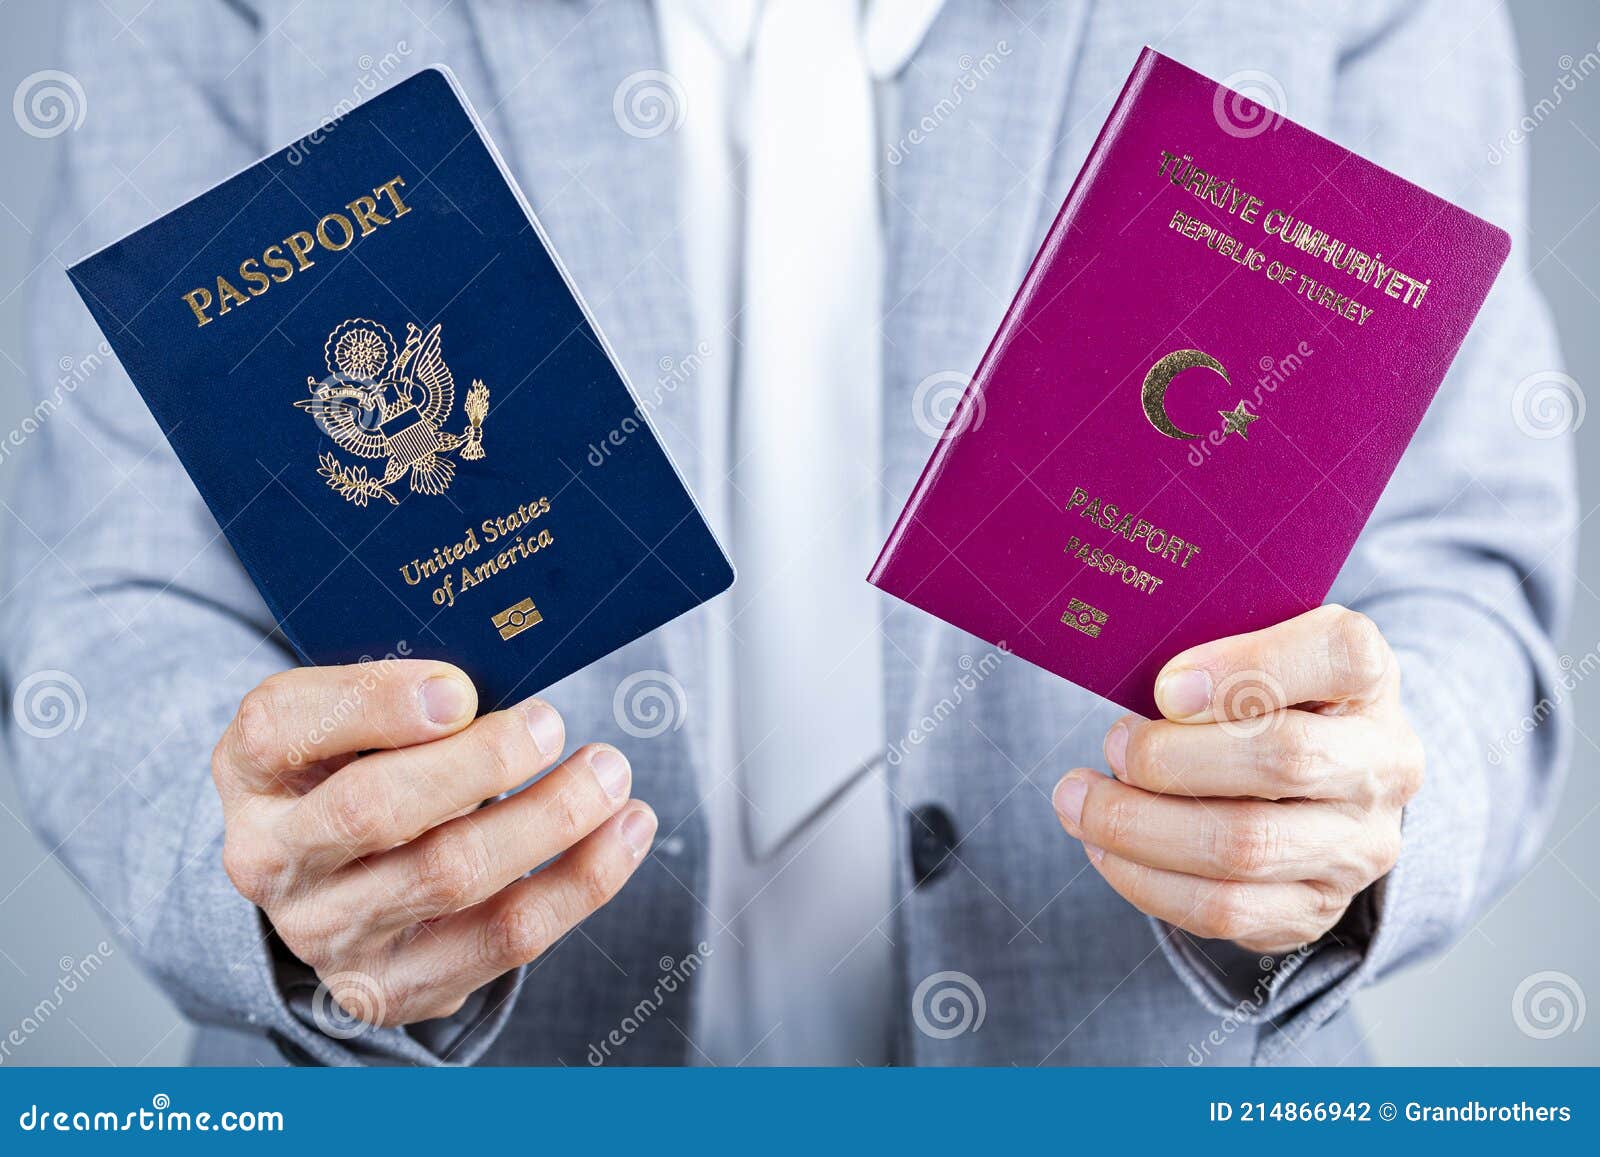 移民美国去不了？移民英国去不了？一本土耳其护照给你新的世界 - 知乎